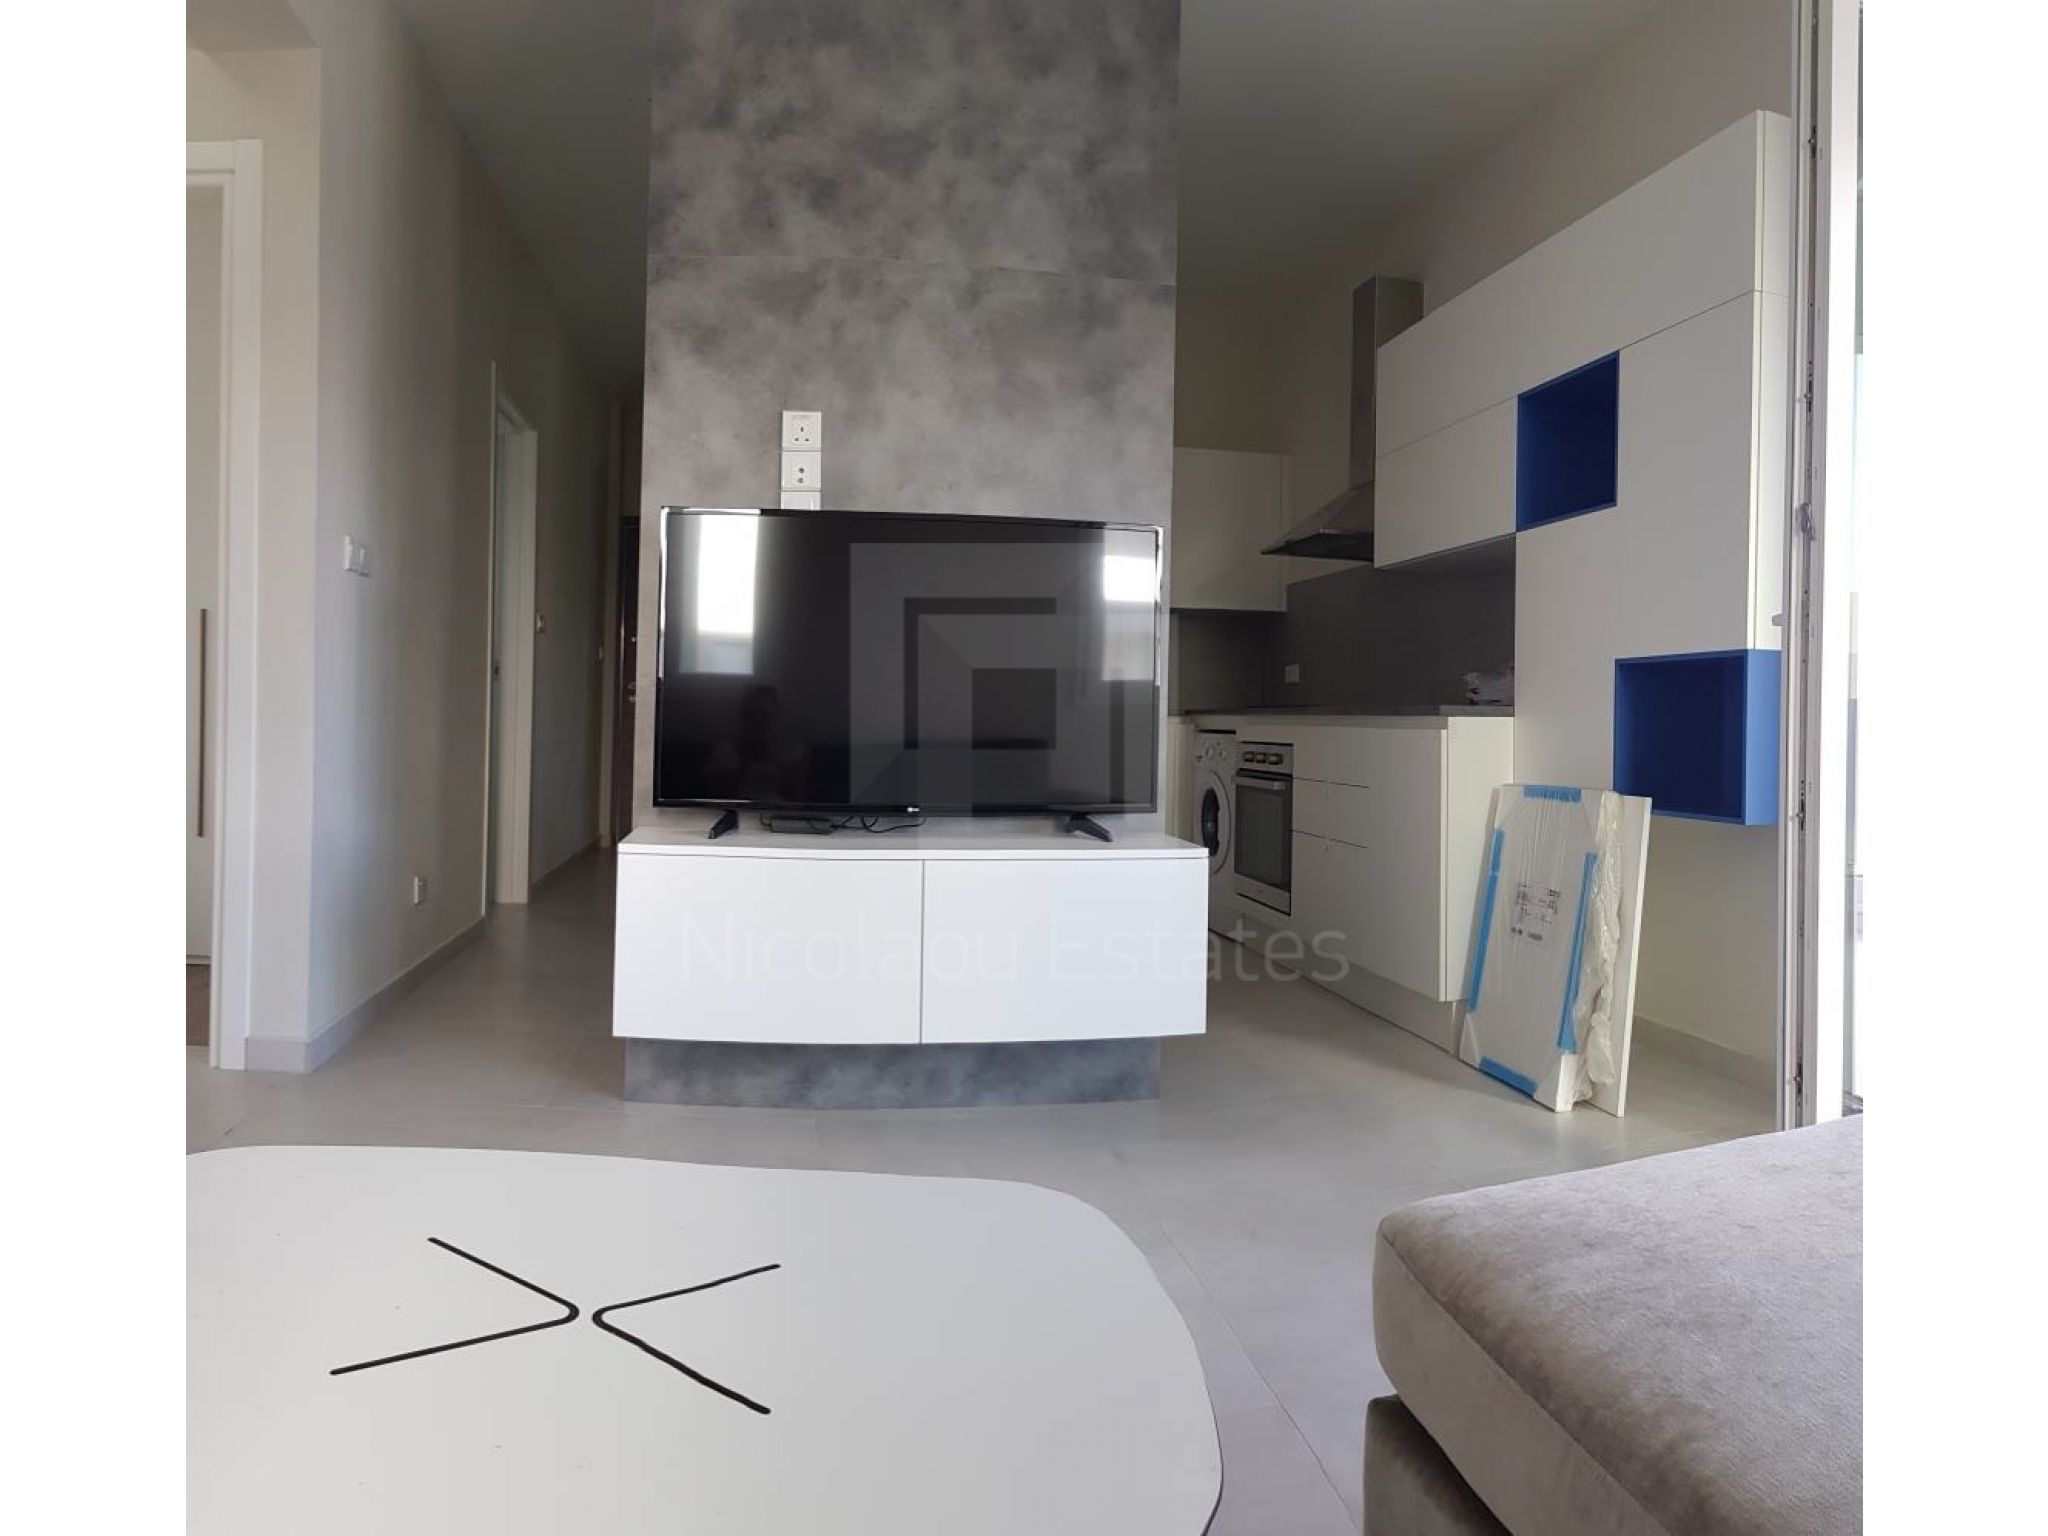 https://www.propertiescy.com/images/uploads/listings/large/14193-1592900596_living-room-open-plan-kitchen.jpg